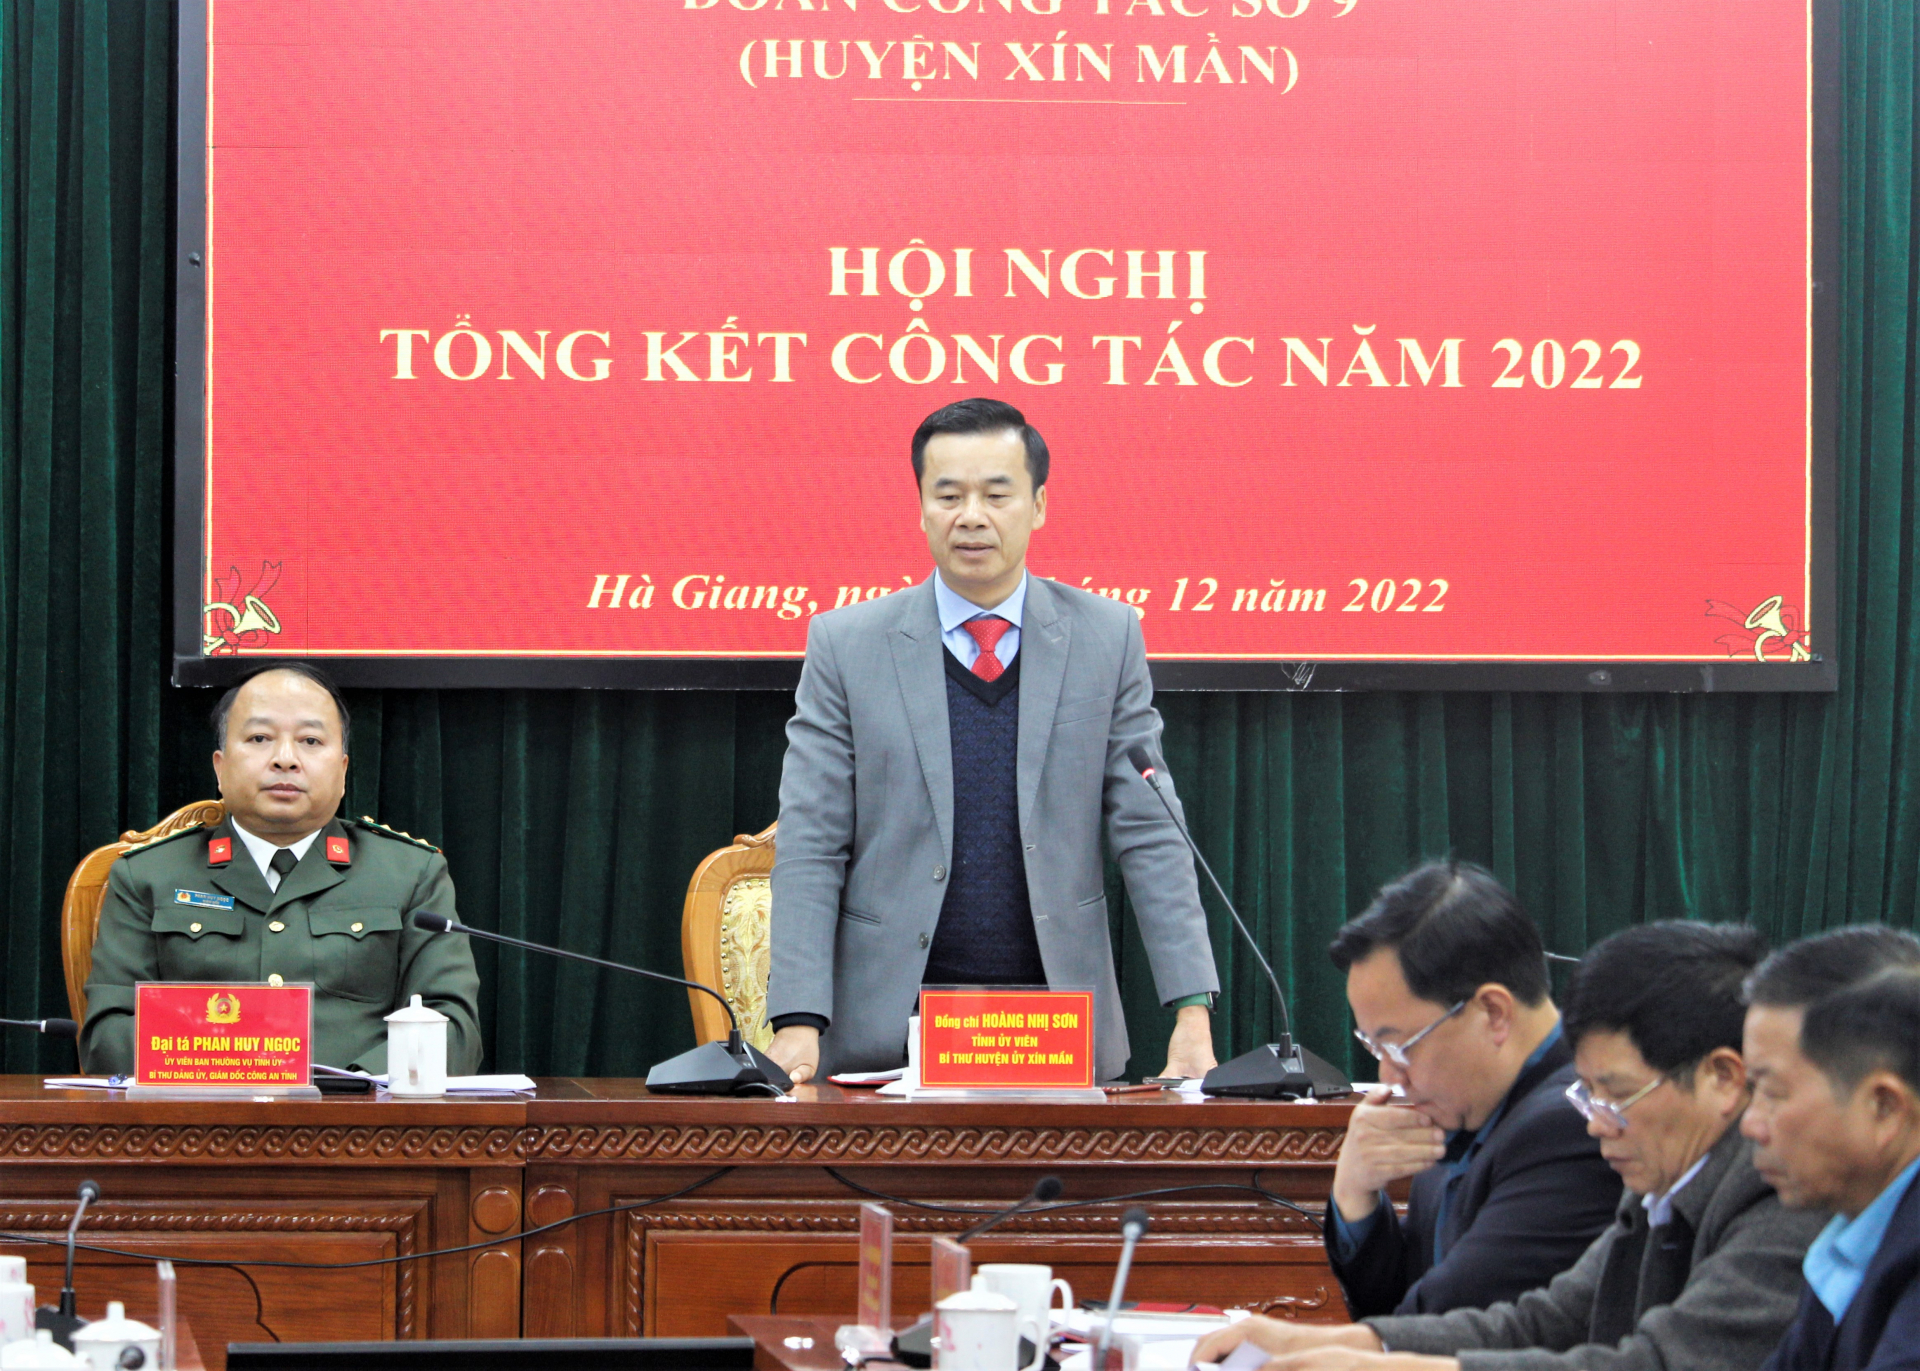 Bí thư Huyện ủy Xín Mần, Hoàng Nhị Sơn báo cáo về những kết quả đạt được trong năm 2022 của huyện và kiến nghị, đề xuất một số nội dung với Đoàn công tác.